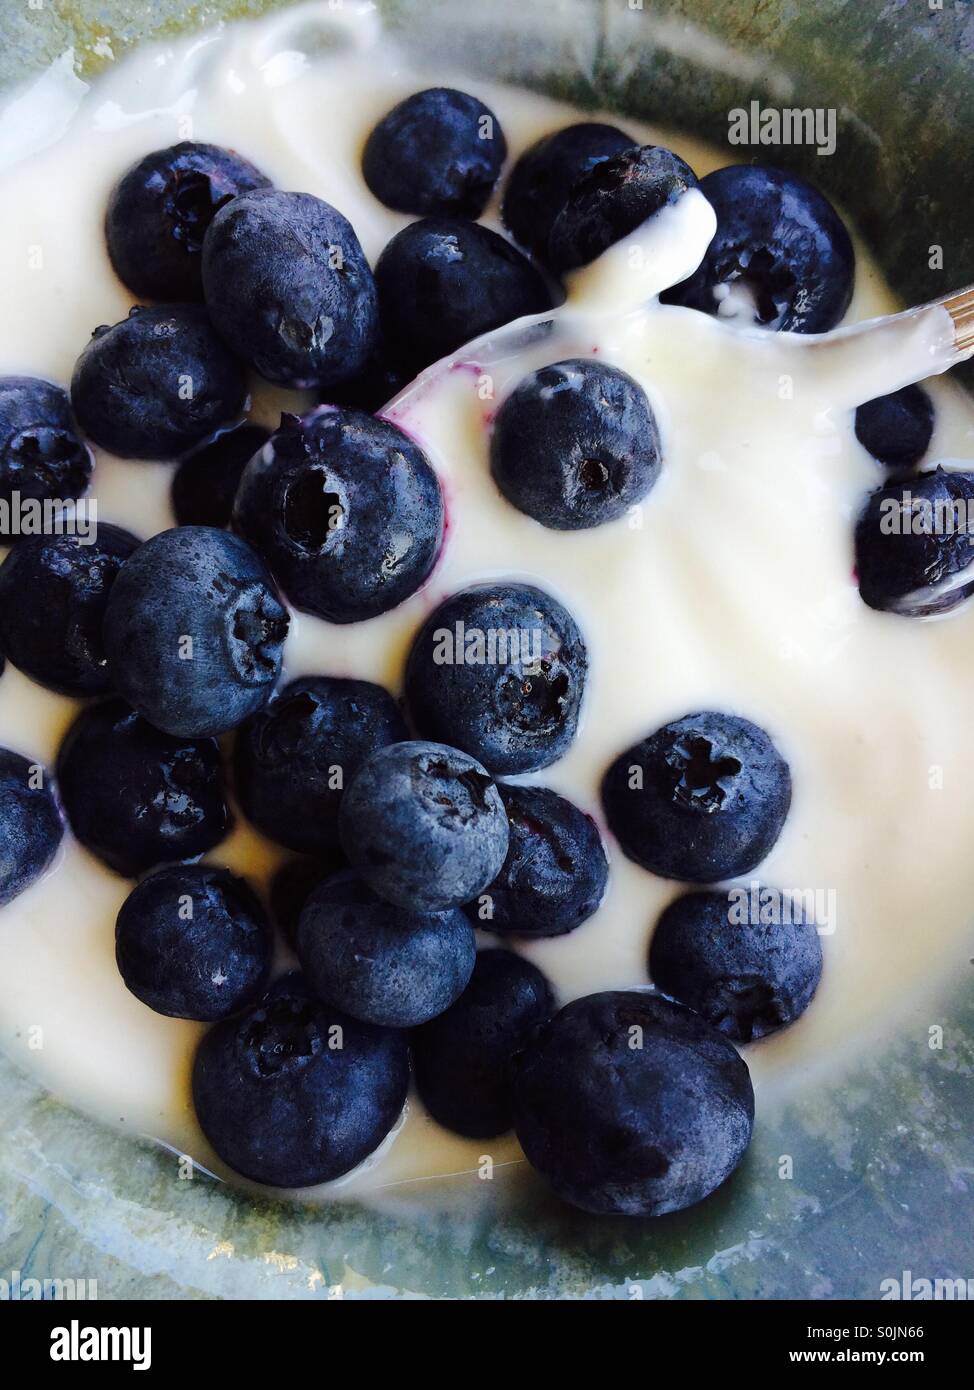 Breakfast yogurt with fresh blueberries Stock Photo